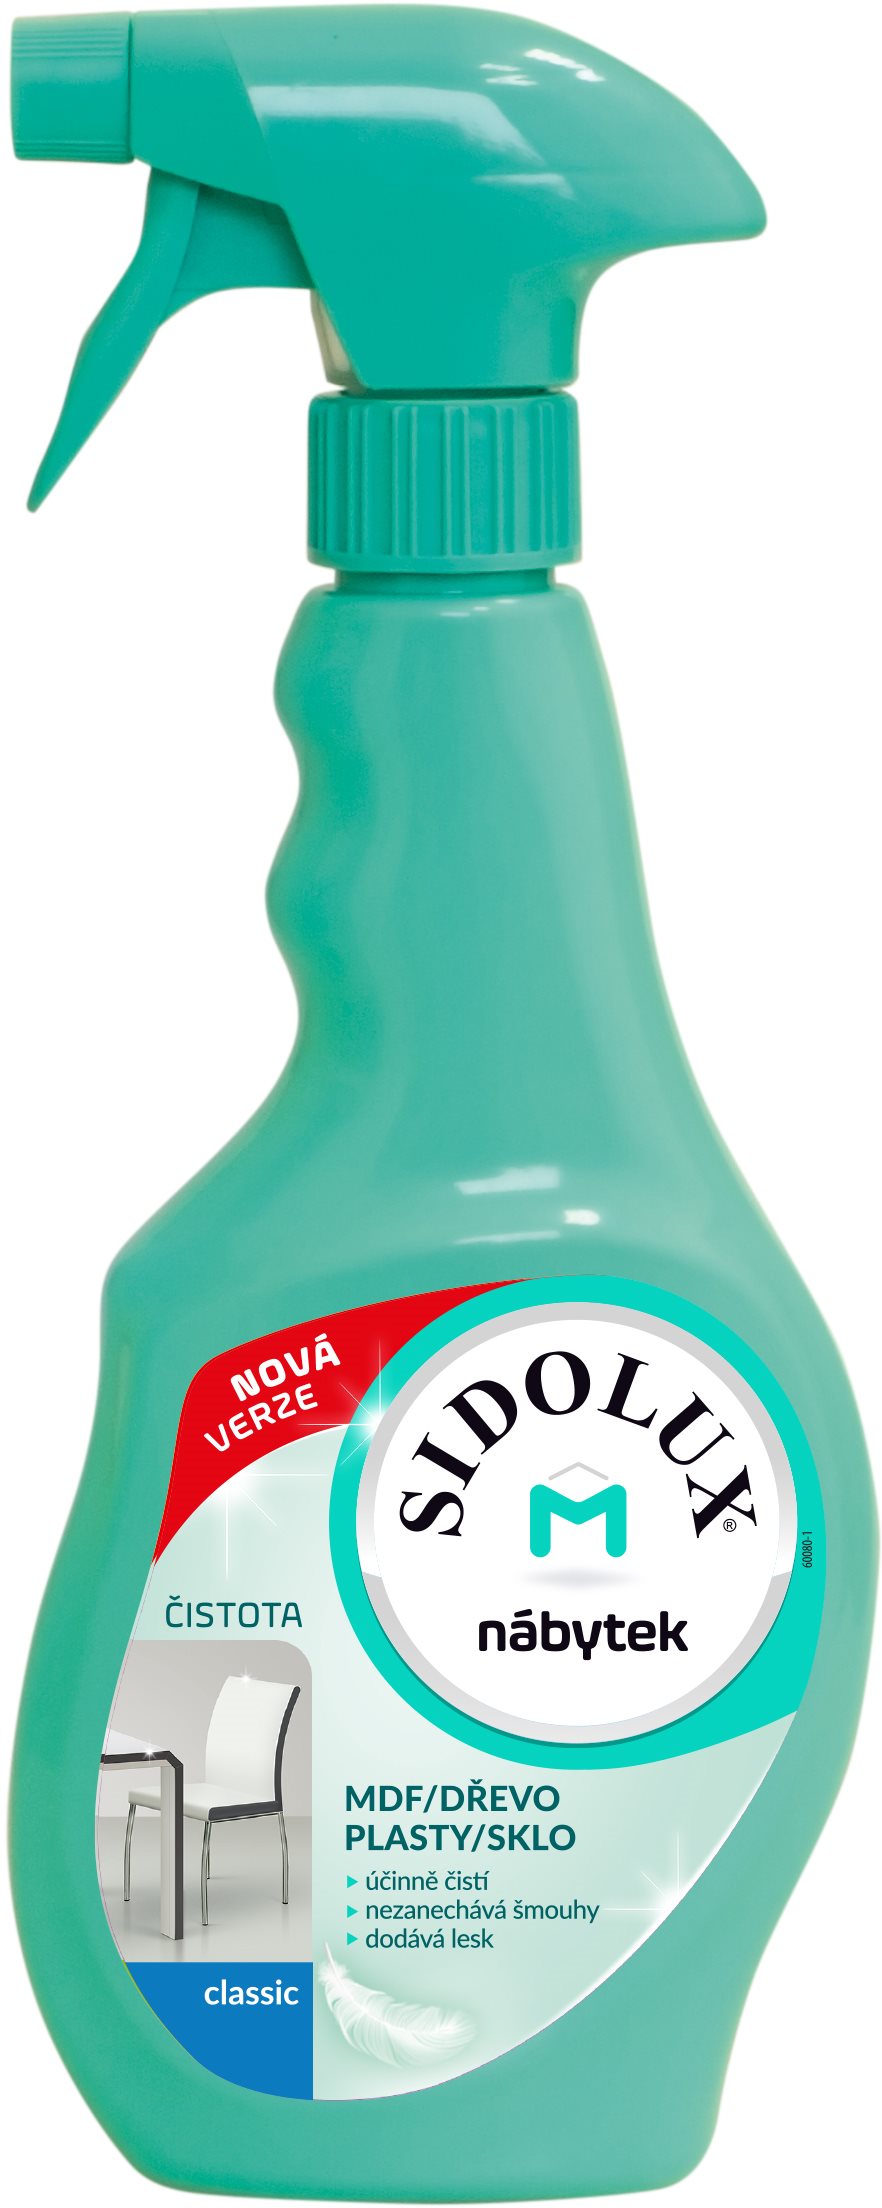 Bútortisztító SIDOLUX M Classic portaszító, Marseille-i szappan illattal, 400 ml